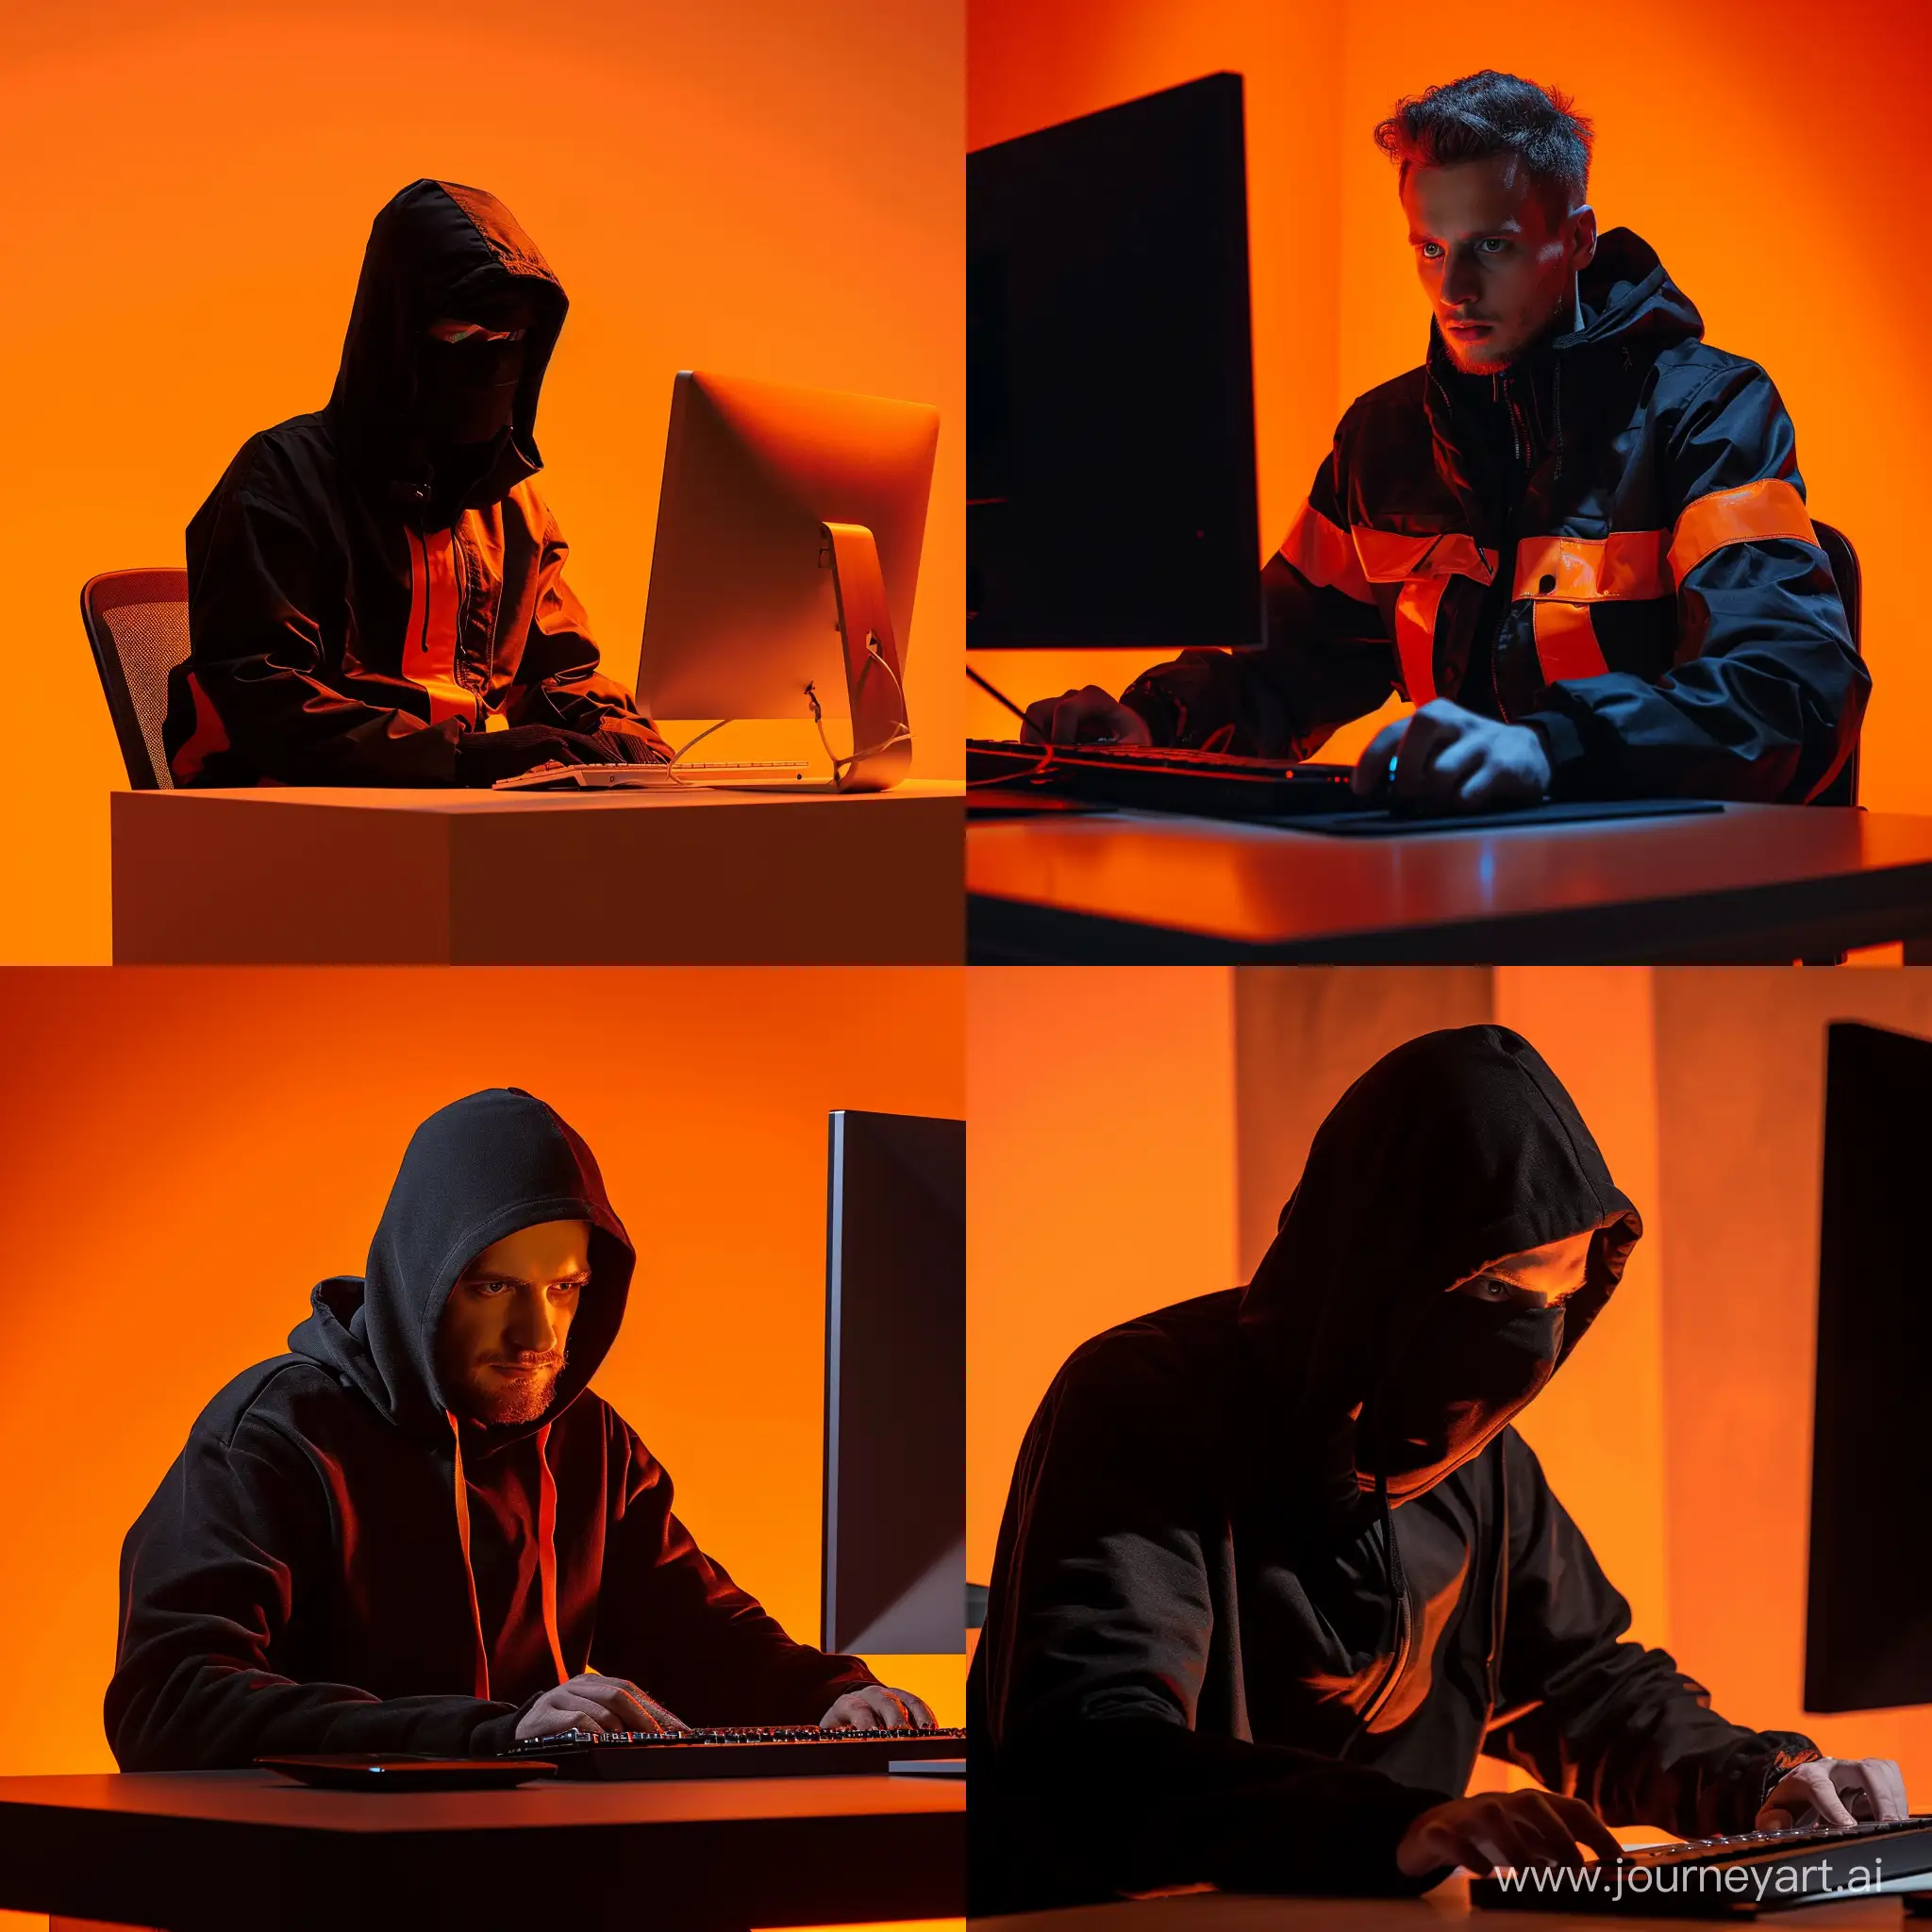 Deceptive-Illegal-Worker-in-Black-and-Orange-Scheme-Behind-a-Computer